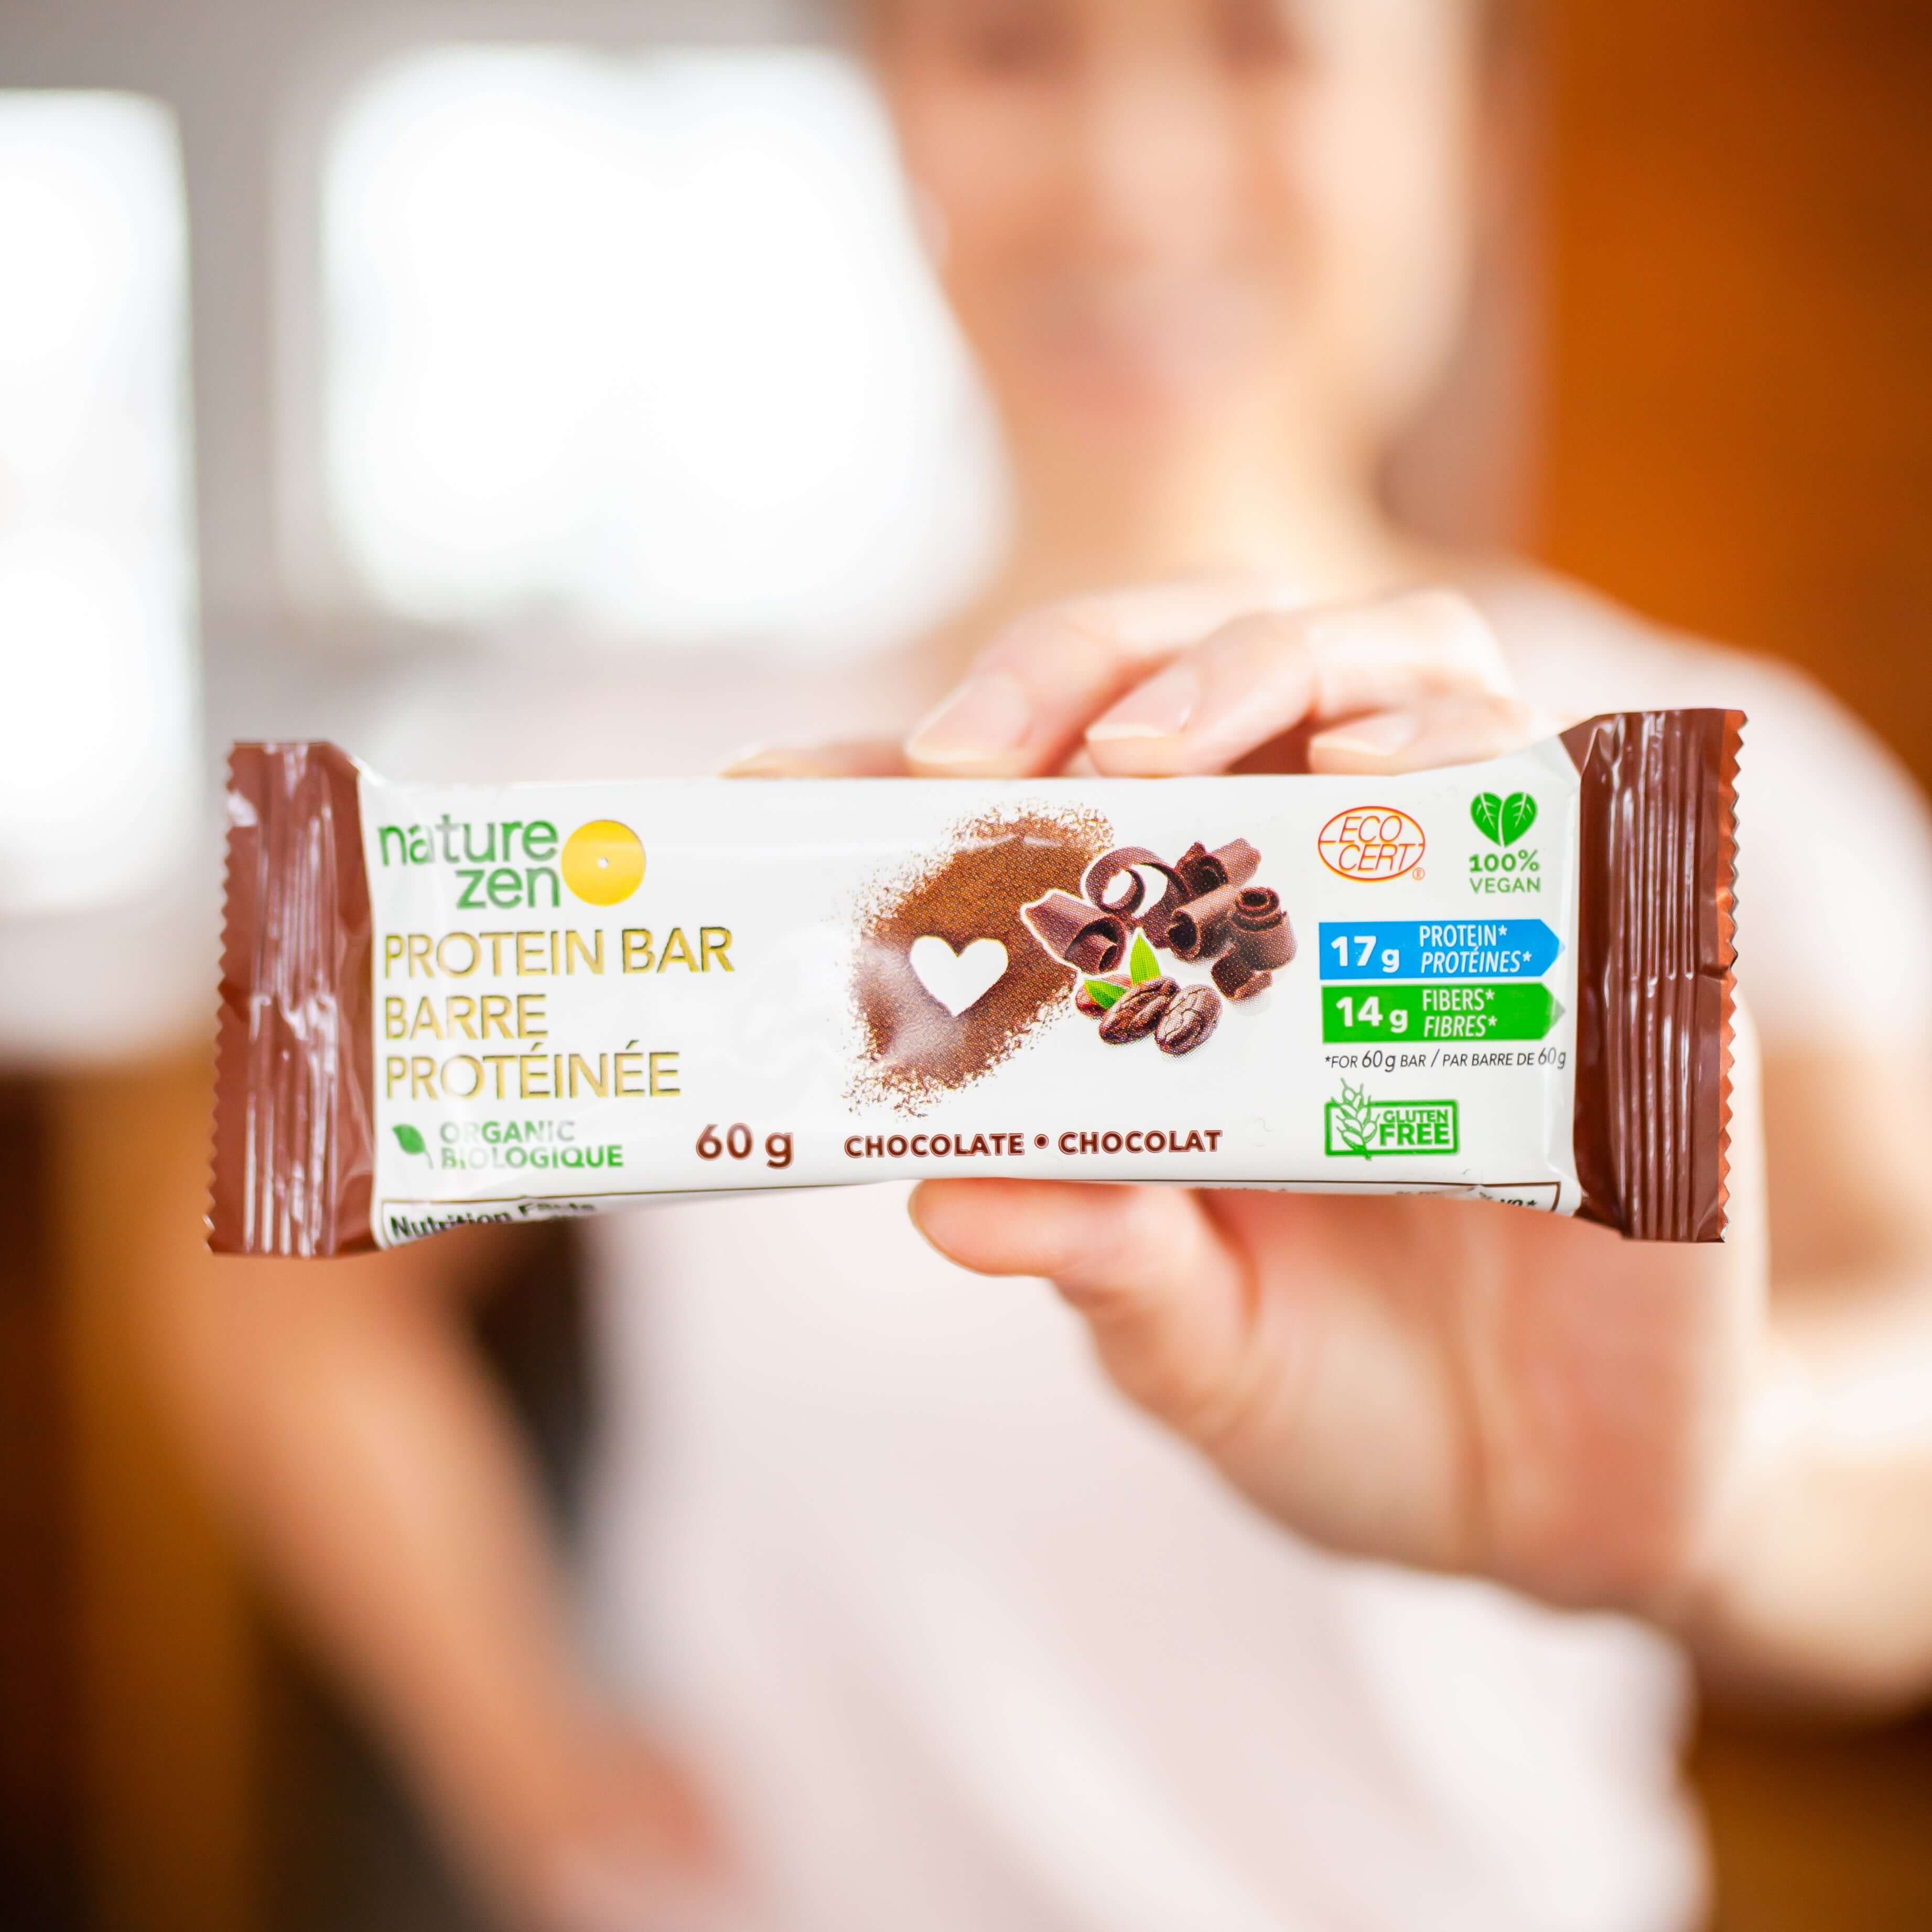 Nature Zen Organic Vegan Protein bars - Chocolate [nut free] bar